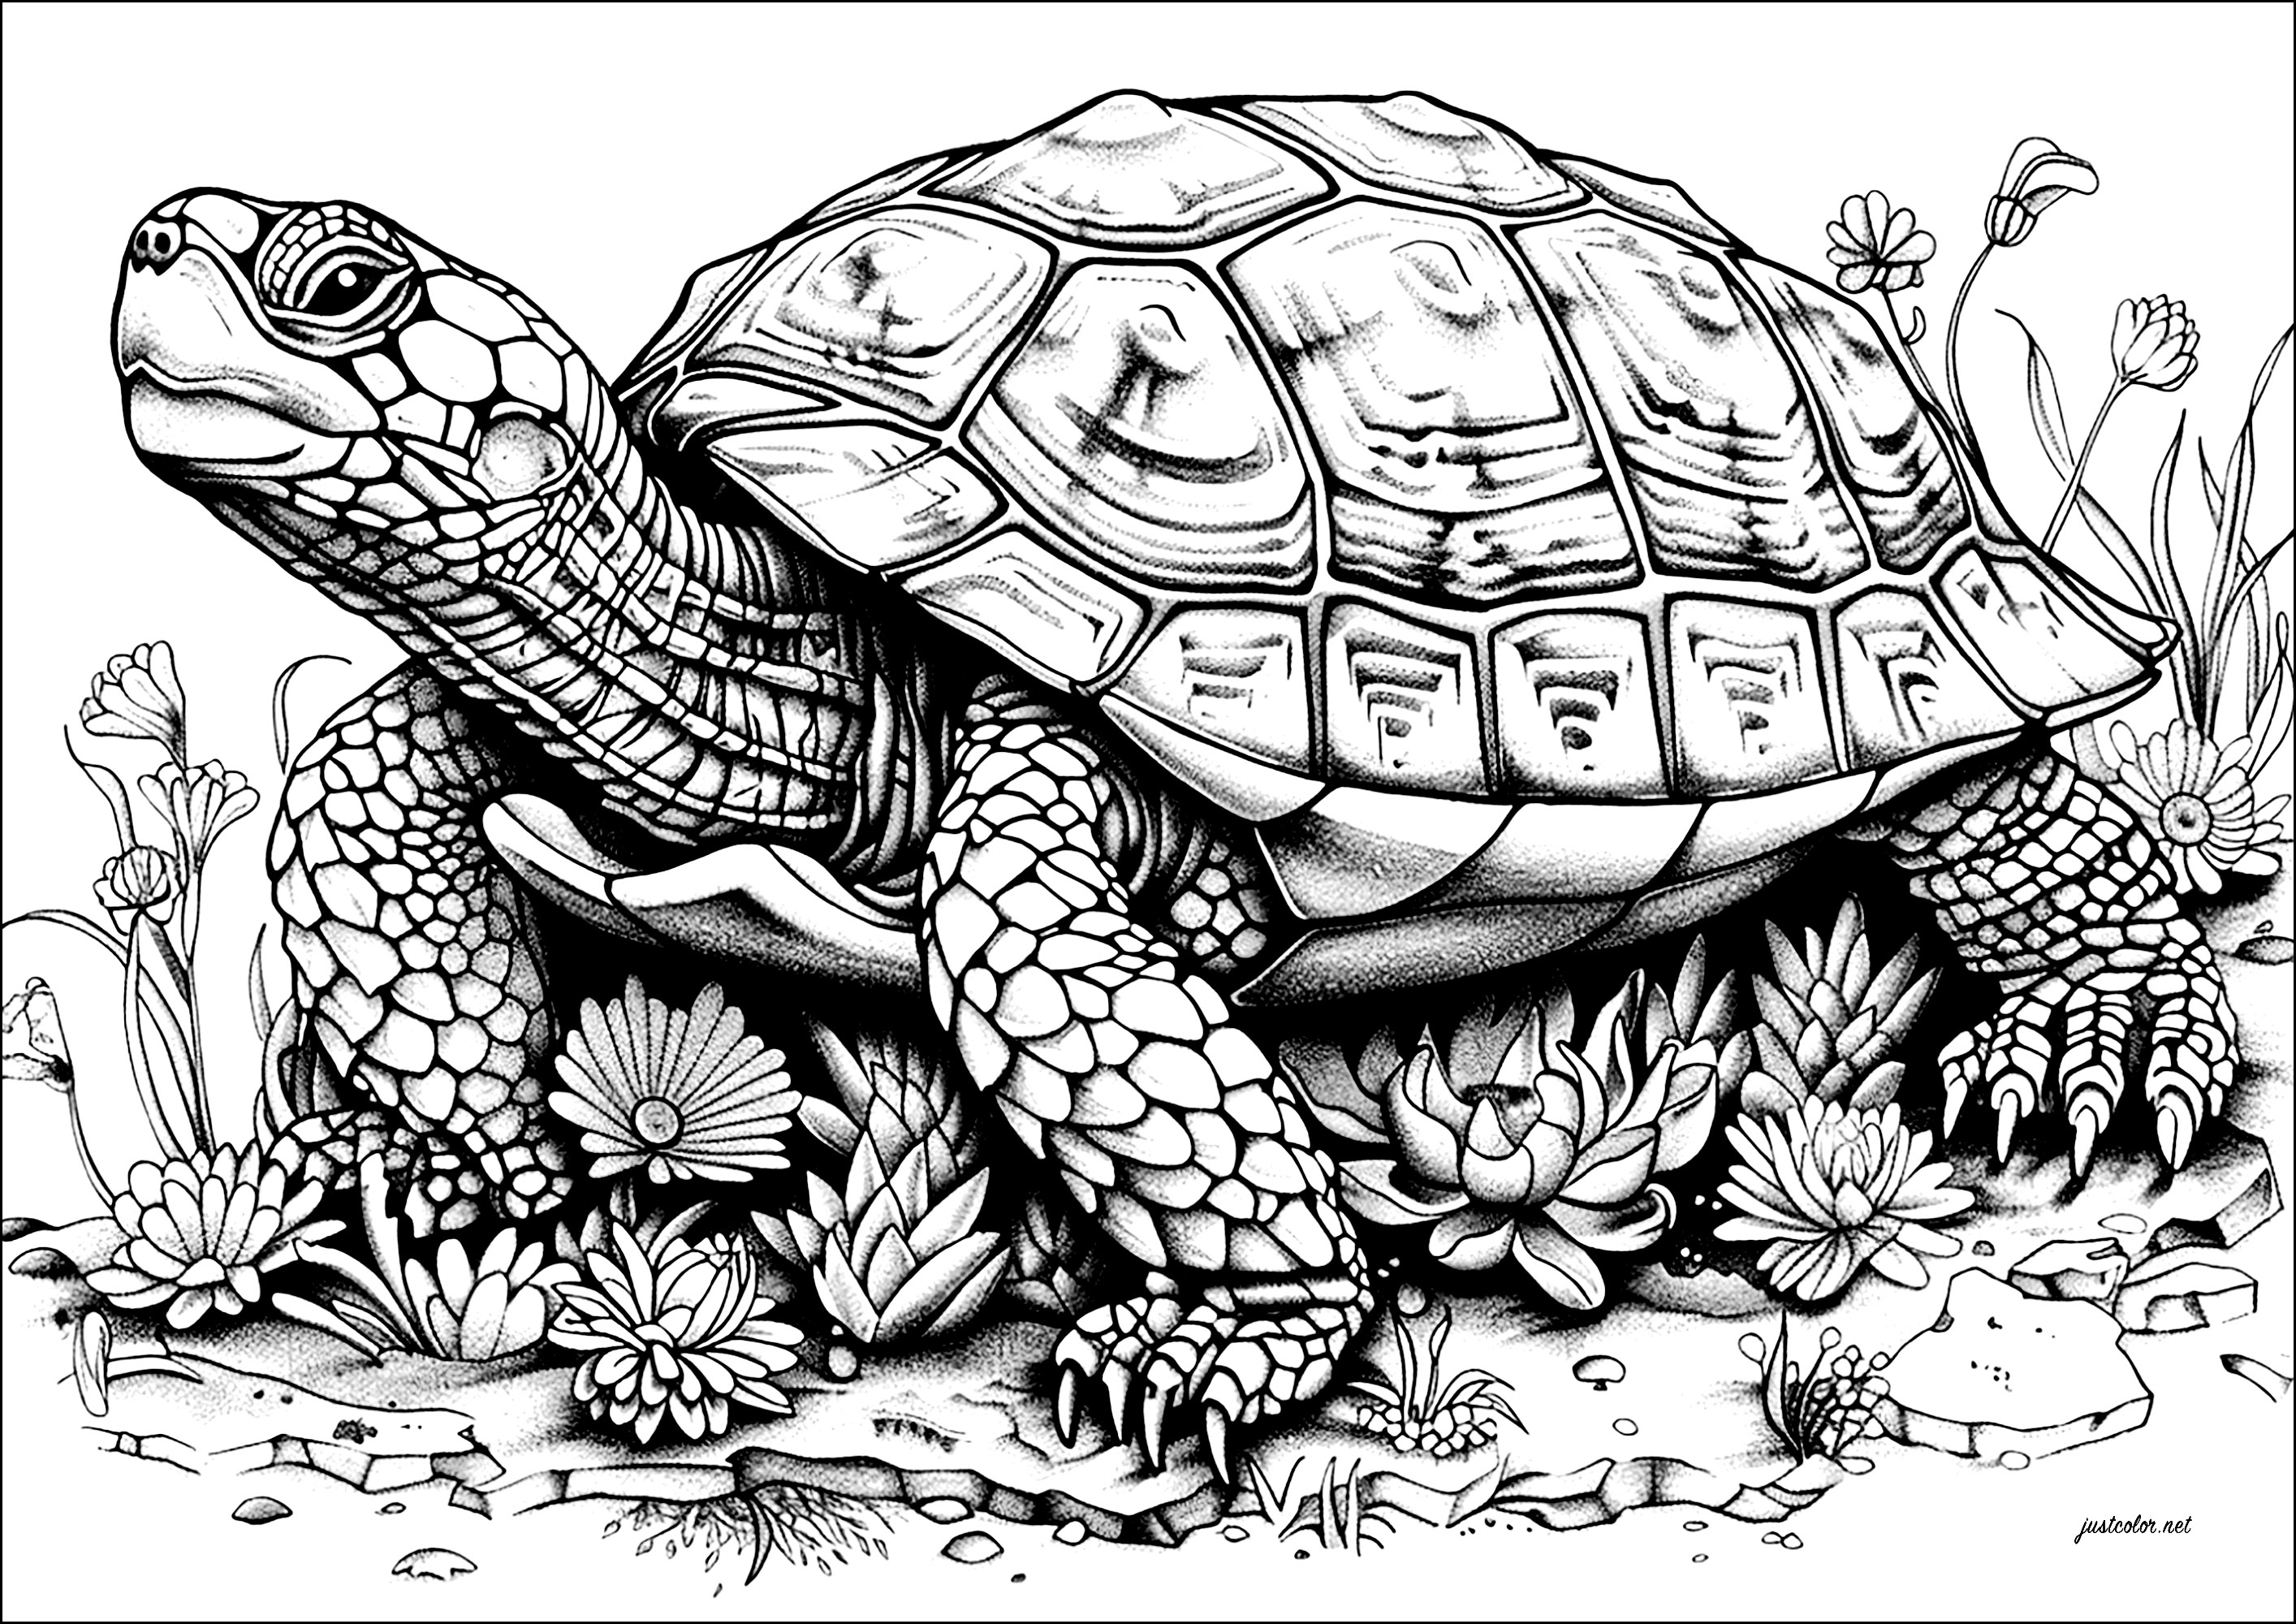 Colorazione di una grande tartaruga in lento movimento, ricca di dettagli. La testa di questa tartaruga è sormontata da un imponente guscio, decorato con intricati disegni che vi divertirete a colorare.Si muove lentamente in avanti, come se portasse il peso del mondo sulla schiena.